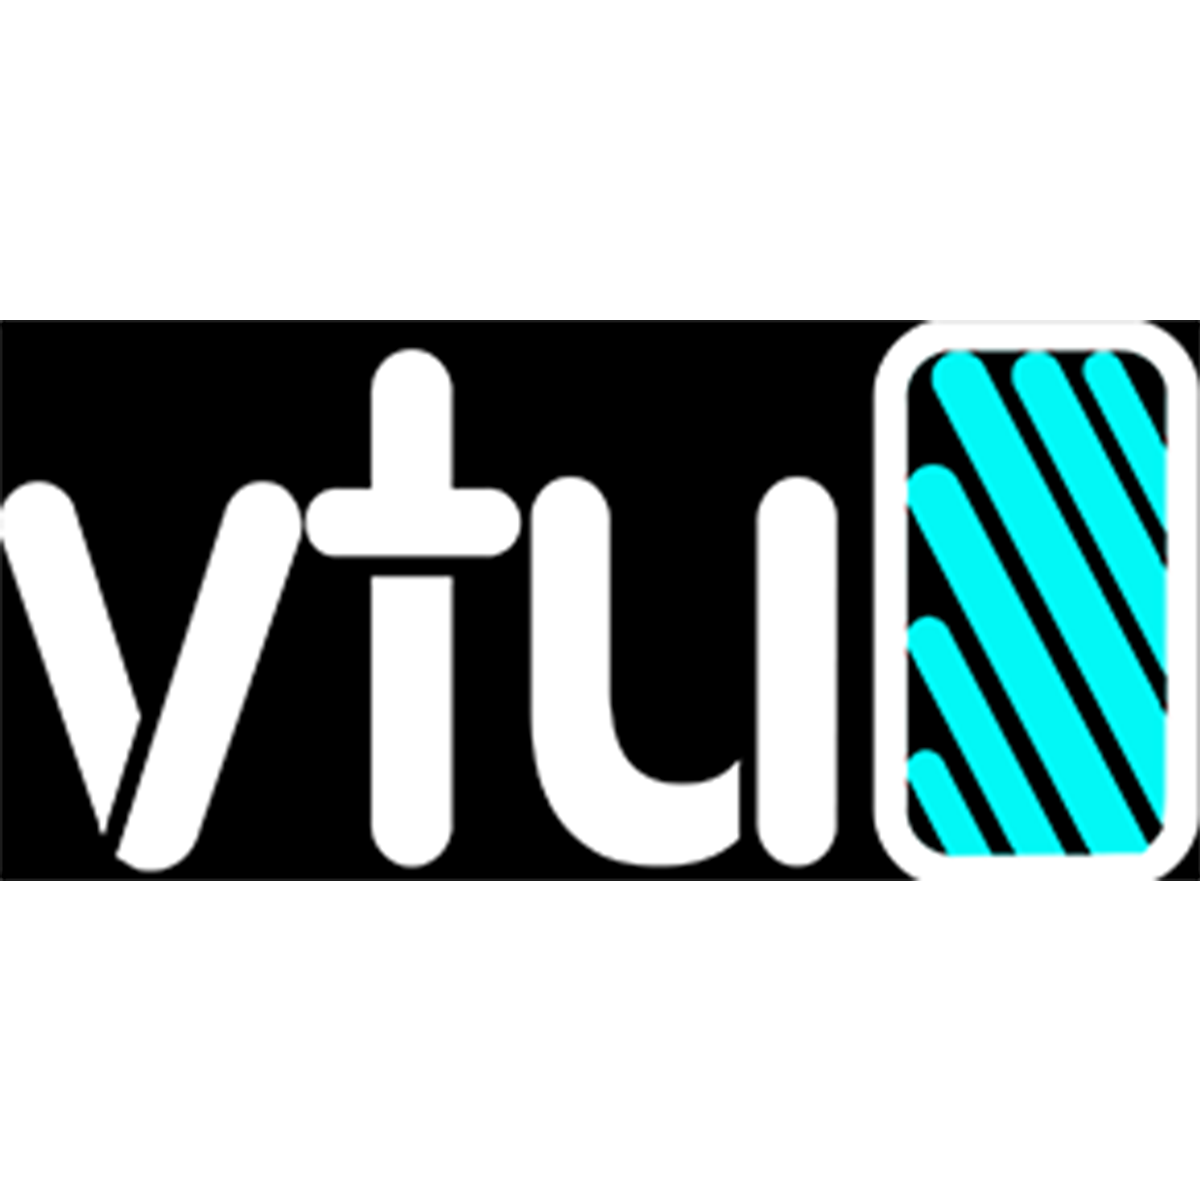 Virginia Tech Union Logo